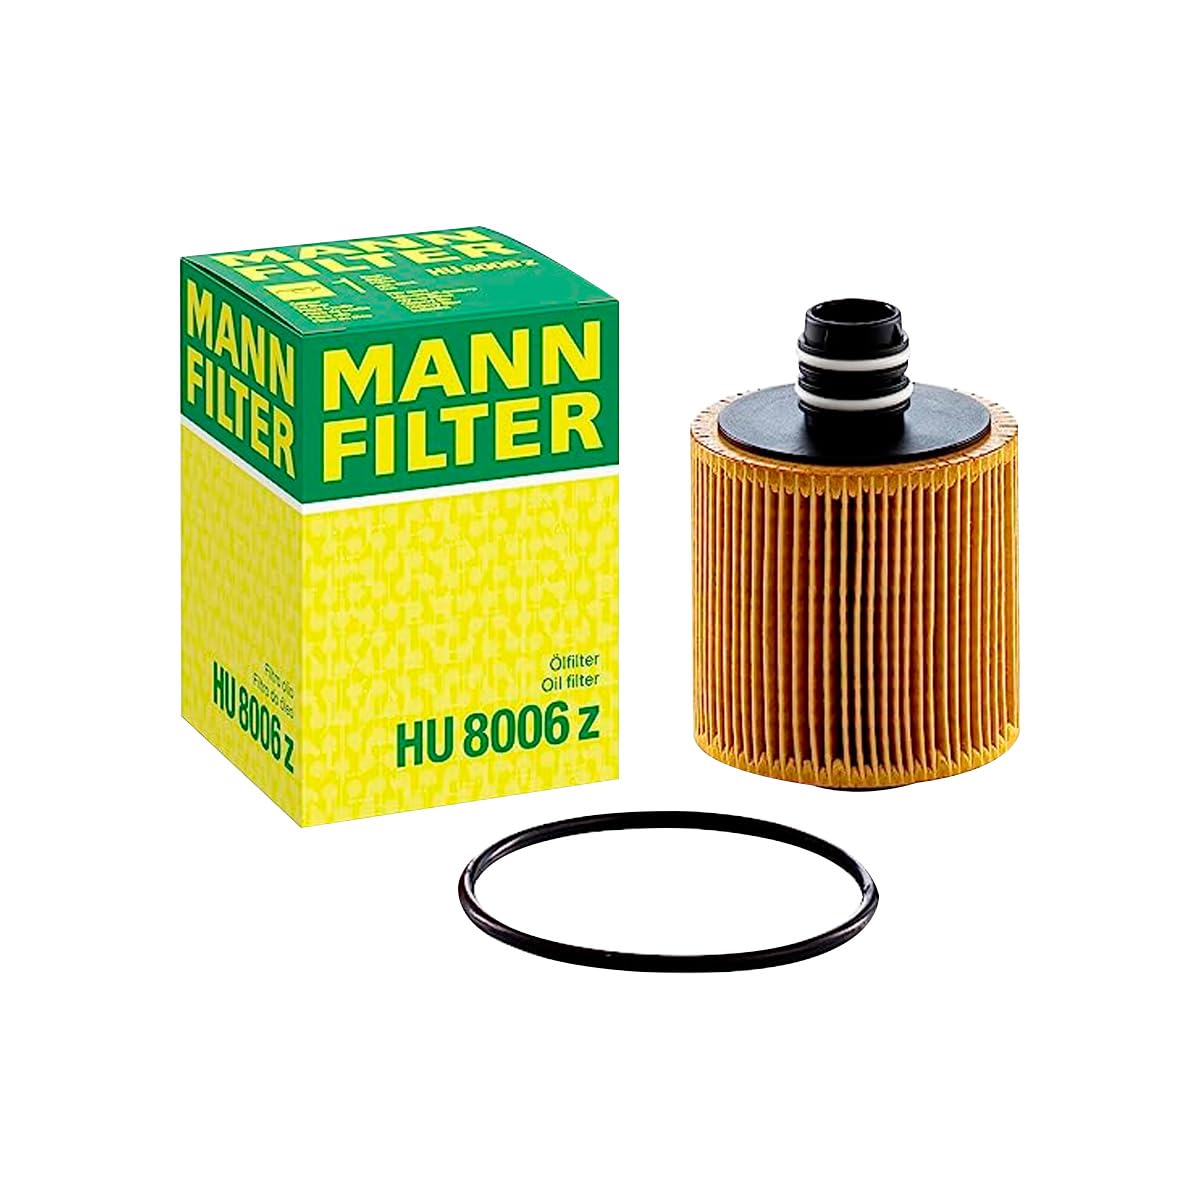 MANN-FILTER HU 8006 z Ölfilter – Ölfilter Satz mit Dichtung / Dichtungssatz – Für PKW von MANN-FILTER